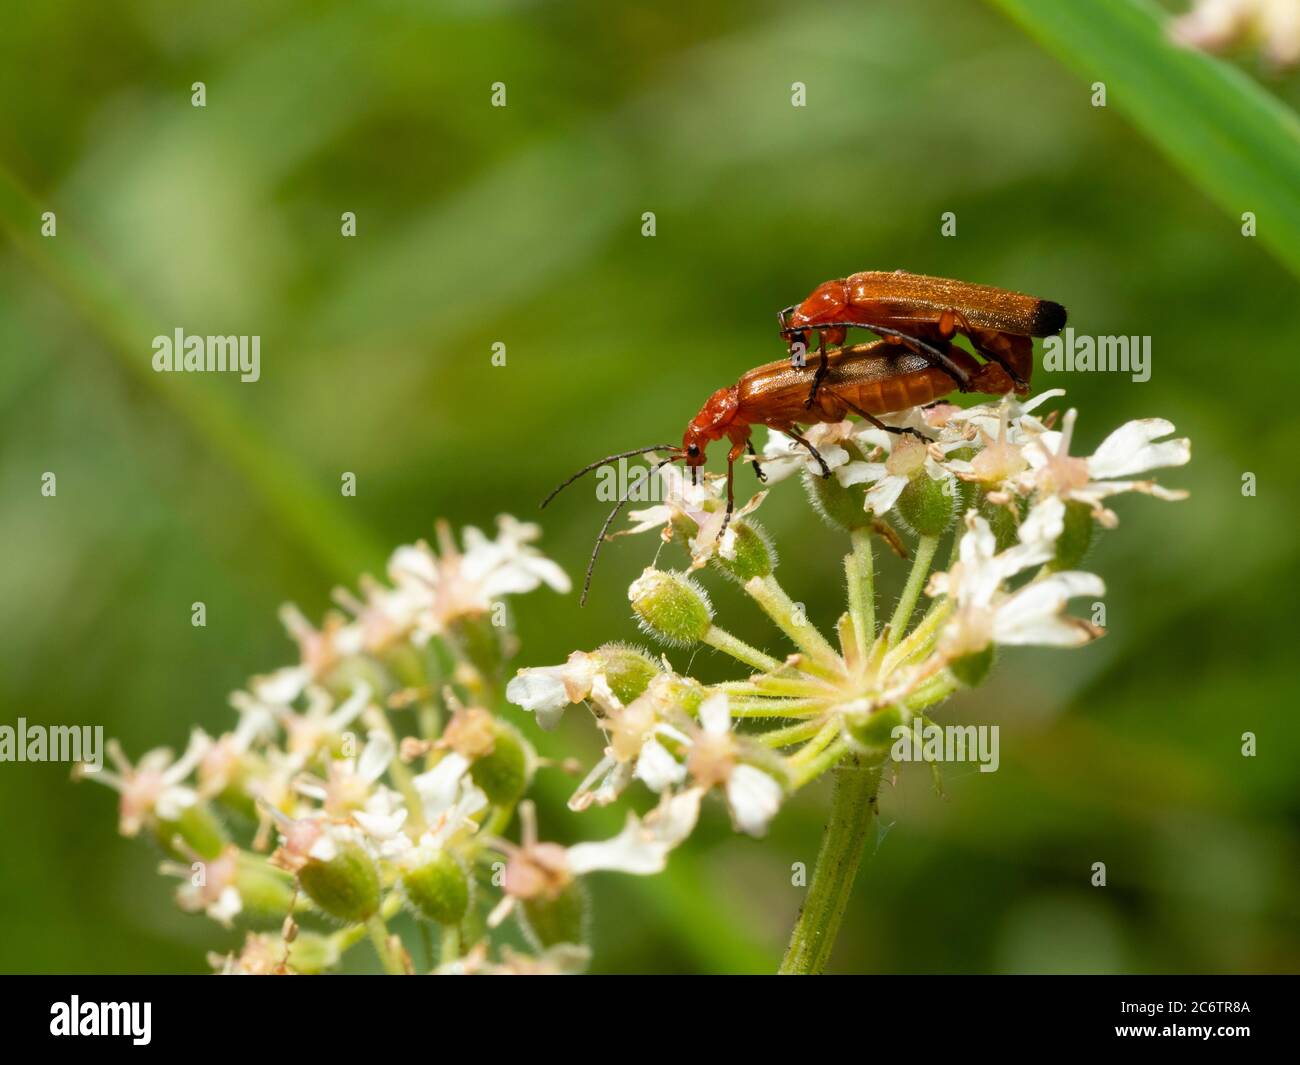 Adult red soldier beetles, Rhagonycha fulva,mating in the flower head of hogweed, Heracleum spondylium, in a UK meadow Stock Photo